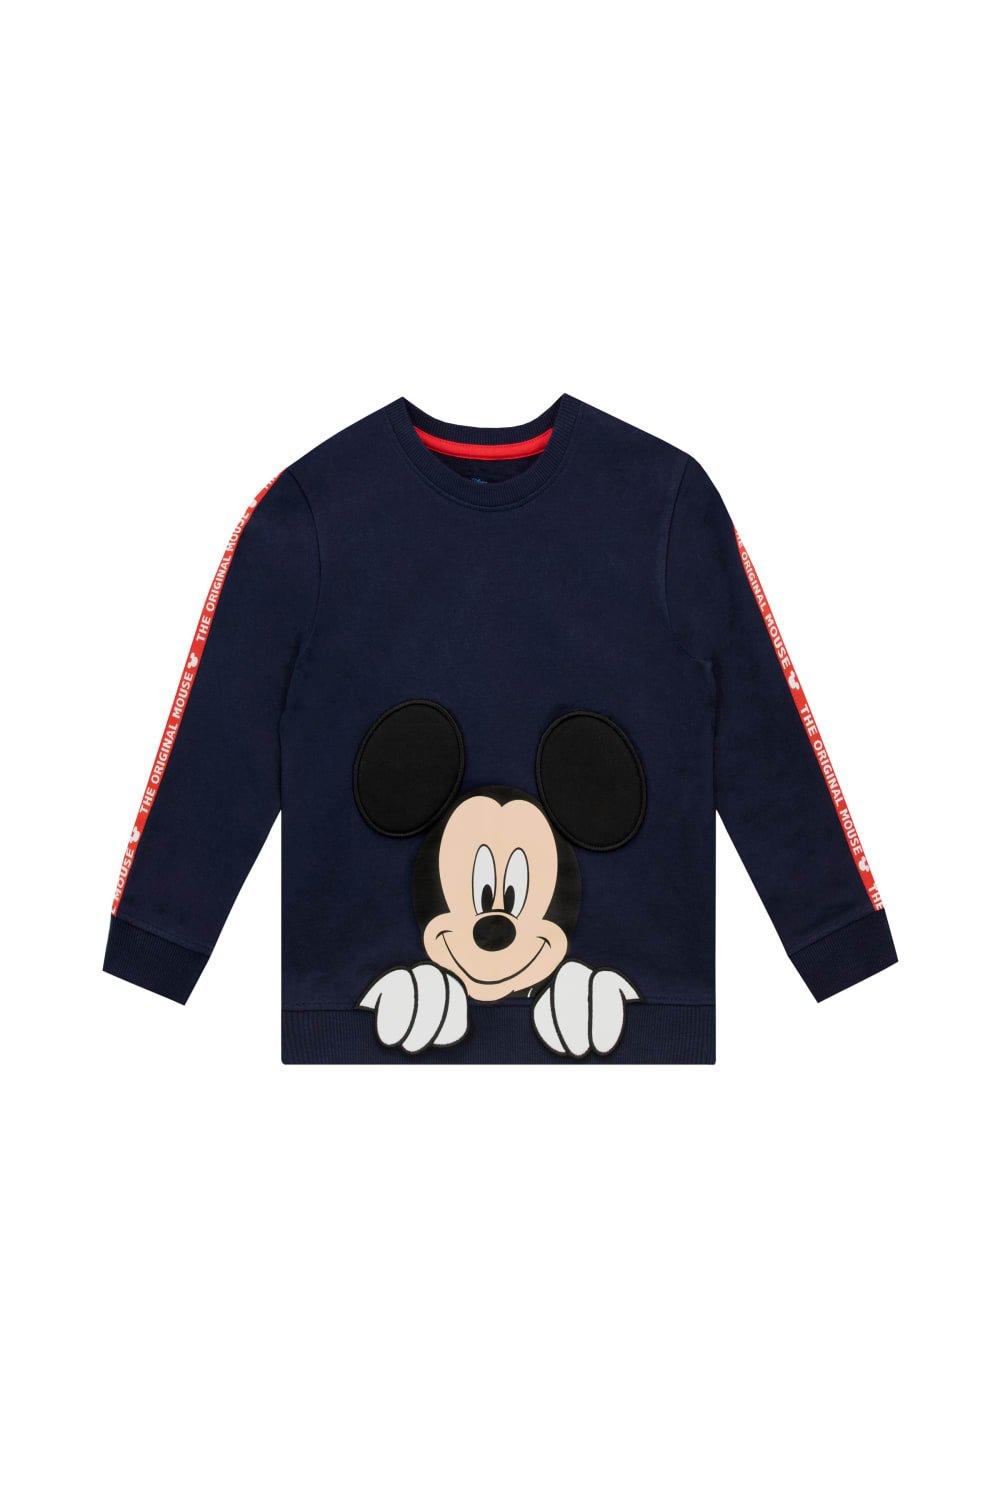 Mickey Mouse 3D Ears Sweatshirt